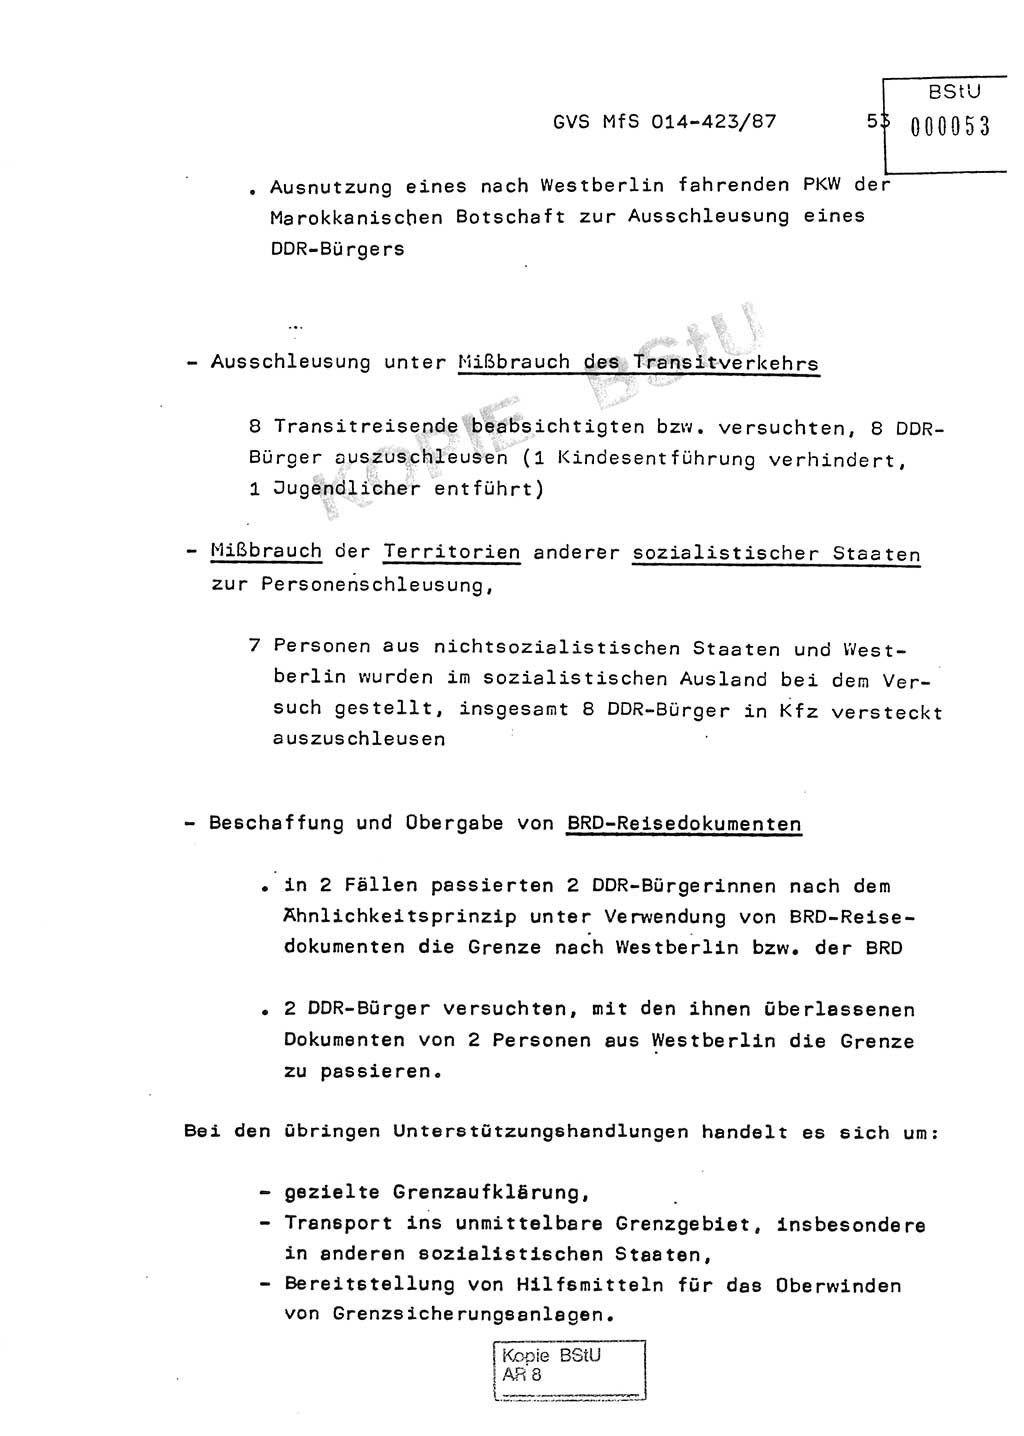 Jahresbericht der Hauptabteilung (HA) Ⅸ 1986, Einschätzung der Wirksamkeit der Untersuchungsarbeit im Jahre 1986, Ministerium für Staatssicherheit (MfS) der Deutschen Demokratischen Republik (DDR), Hauptabteilung Ⅸ, Geheime Verschlußsache (GVS) o014-423/87, Berlin 1987, Seite 53 (Einsch. MfS DDR HA Ⅸ GVS o014-423/87 1986, S. 53)